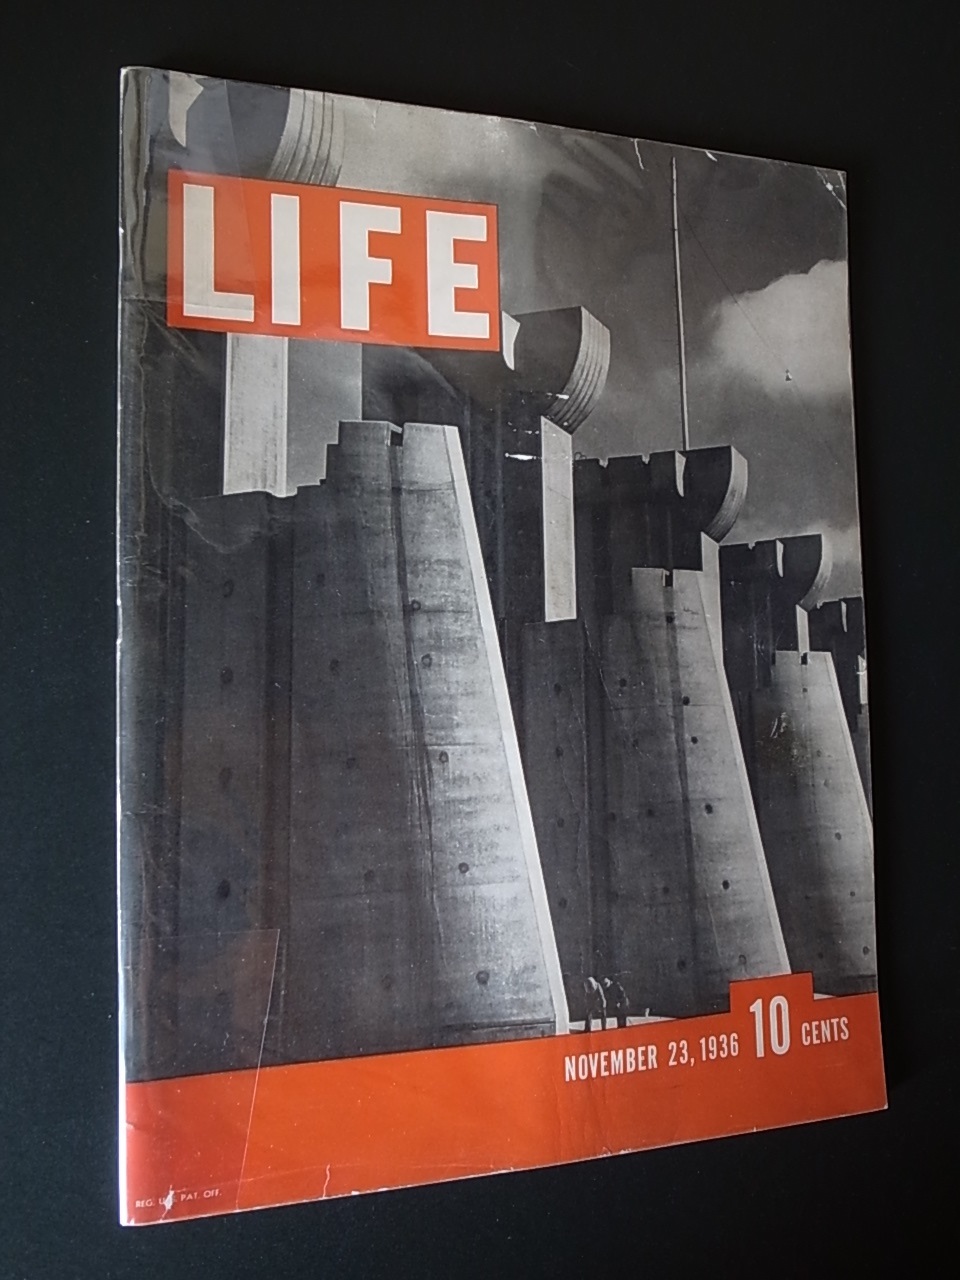 ライフ創刊号 Life November 23 1936 The First Issue Books Things